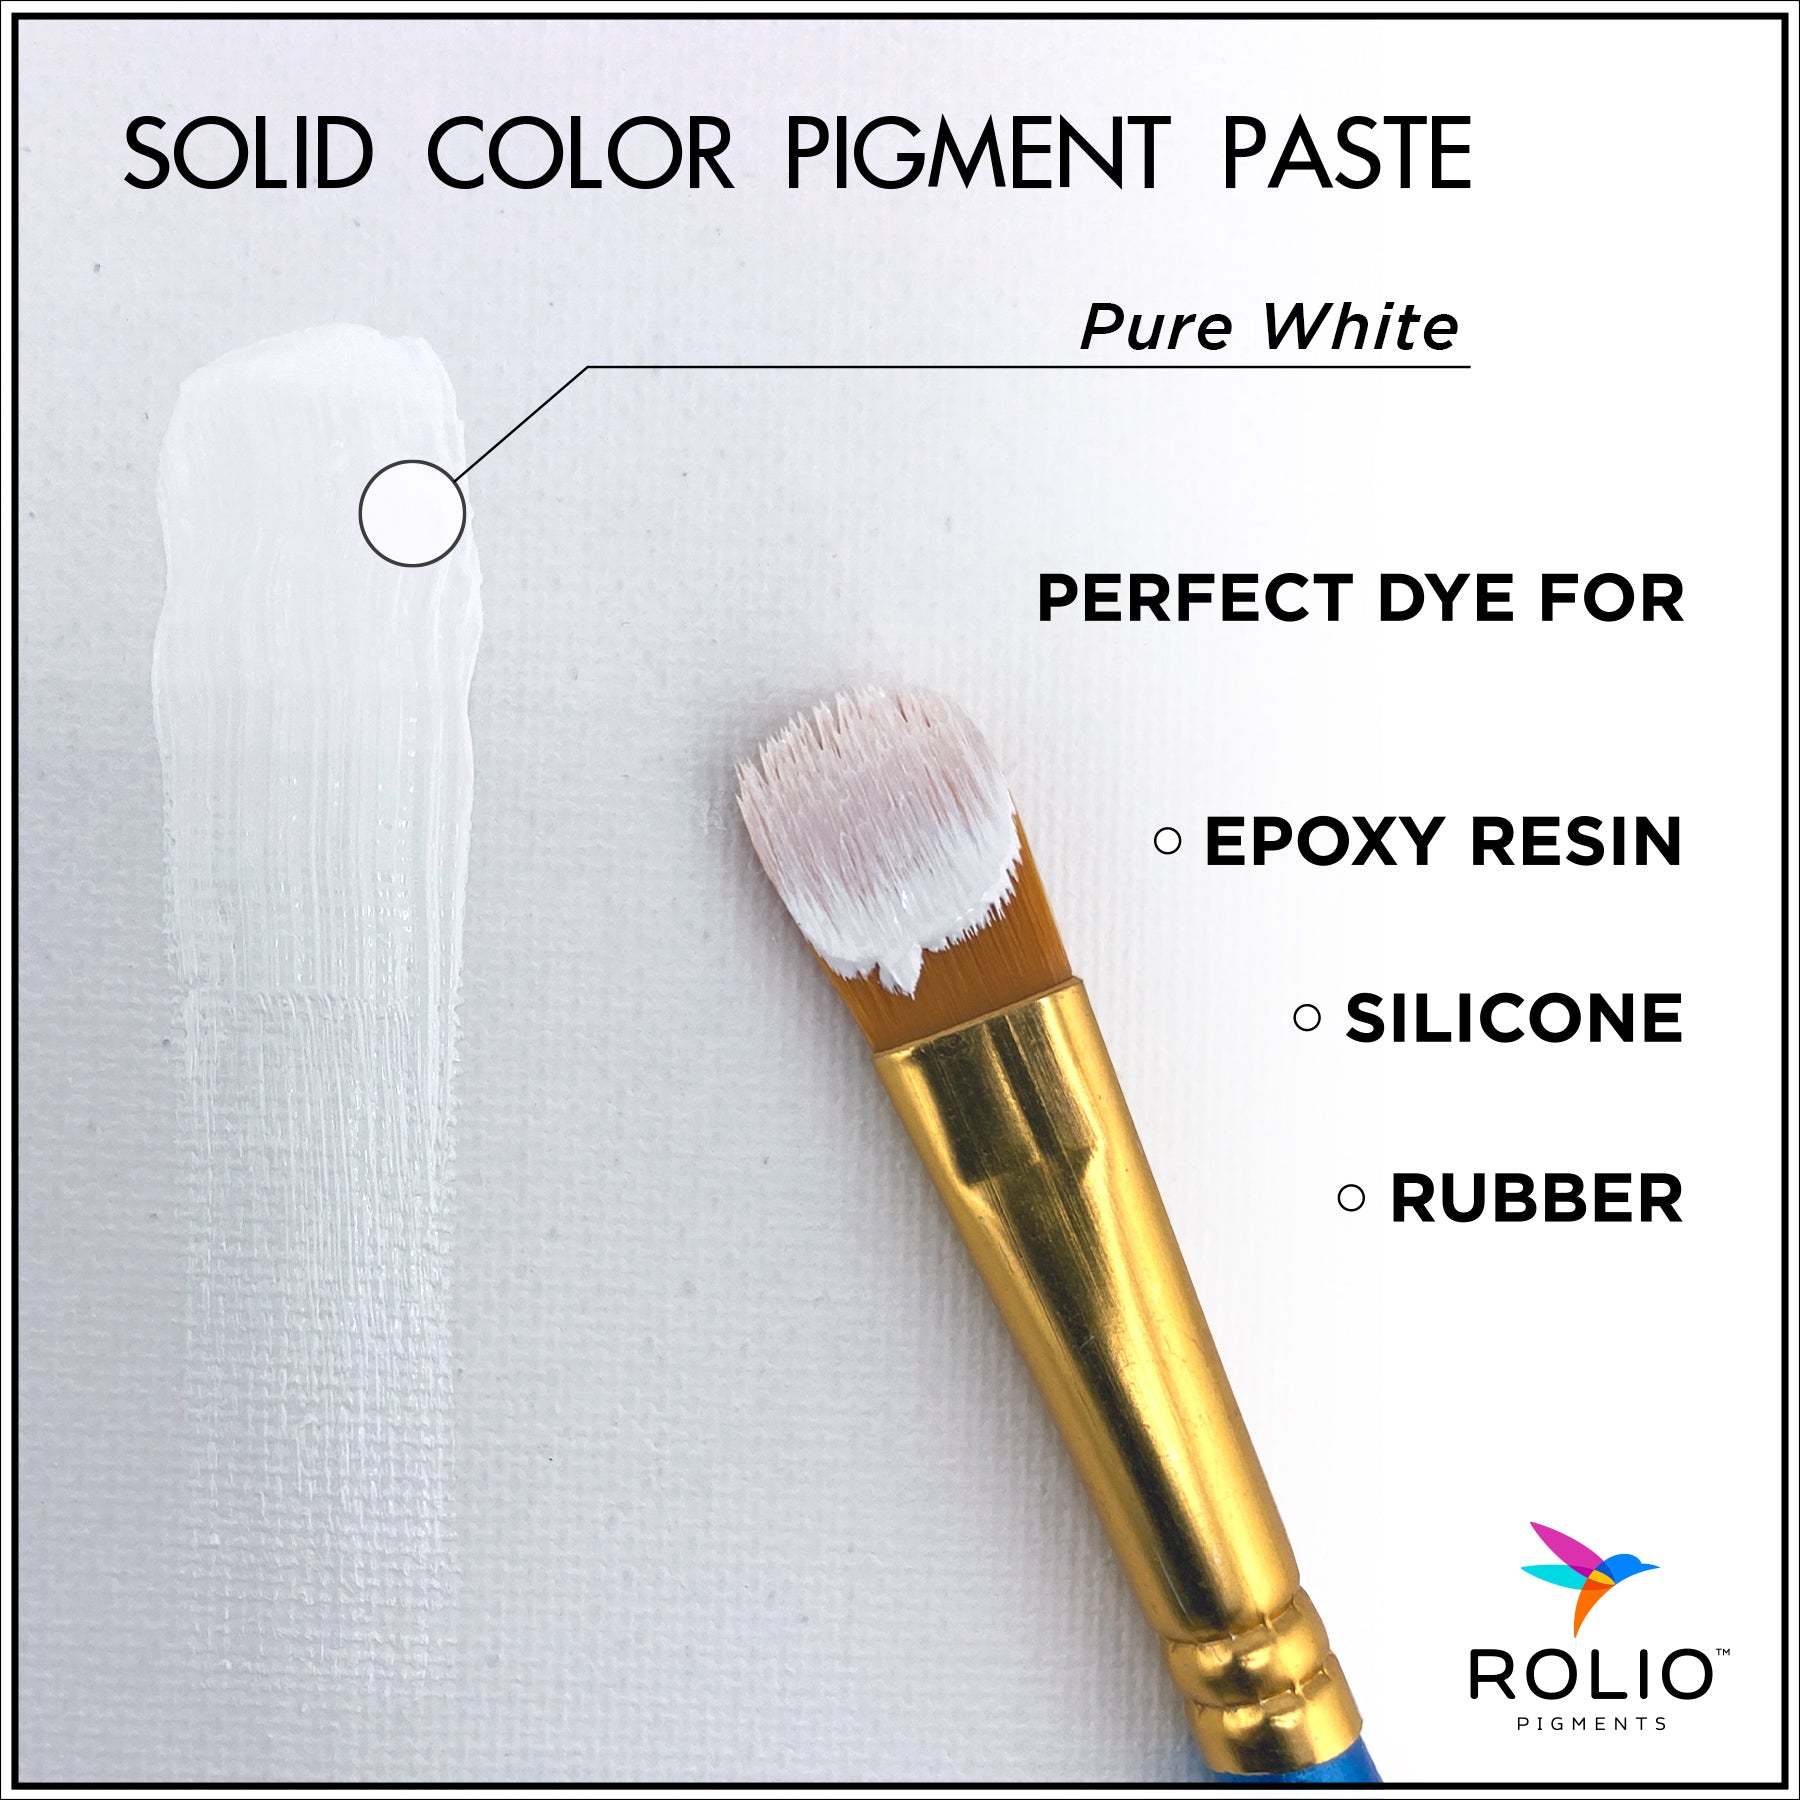 03-Rolio-Pure-White-Resin-Pigment-Paste-Description.jpg